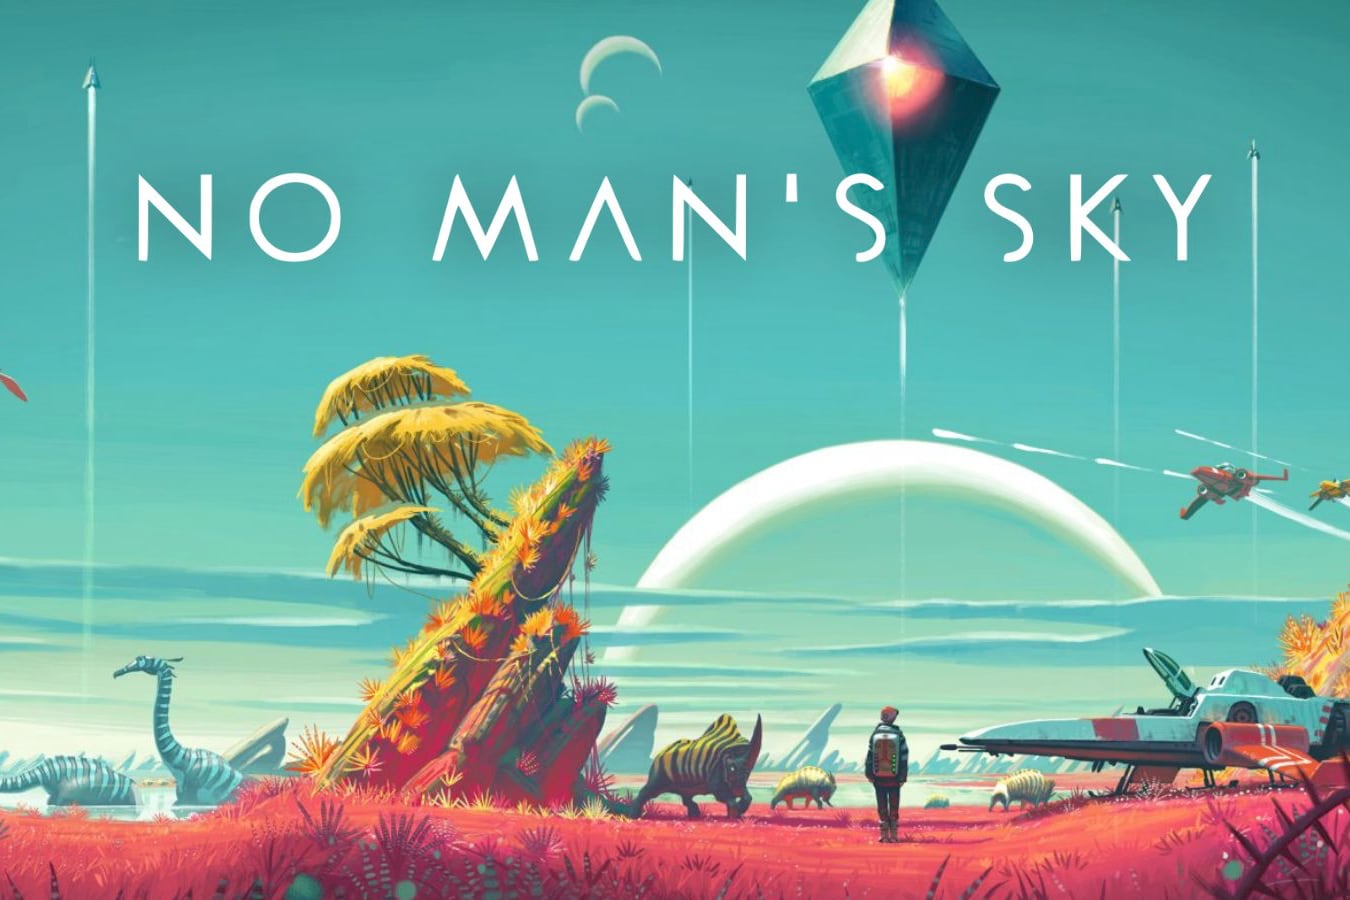 Игра No Man’s Sky наконец-то выйдет для iPad и Mac этим летом. Её обещали год назад